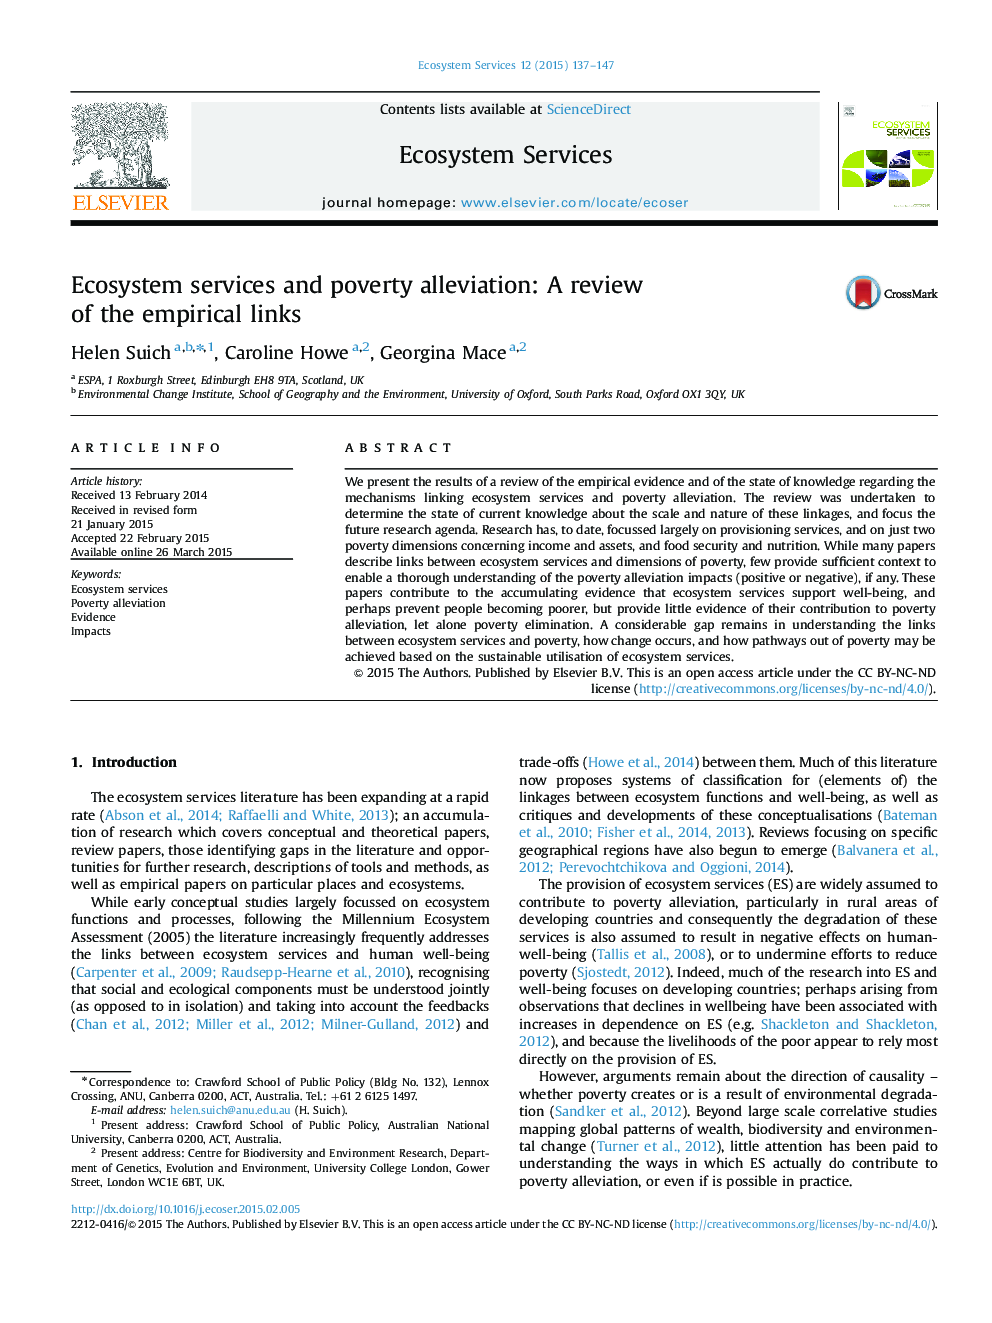 خدمات اکوسیستم و کاهش فقر: بررسی پیوندهای تجربی 